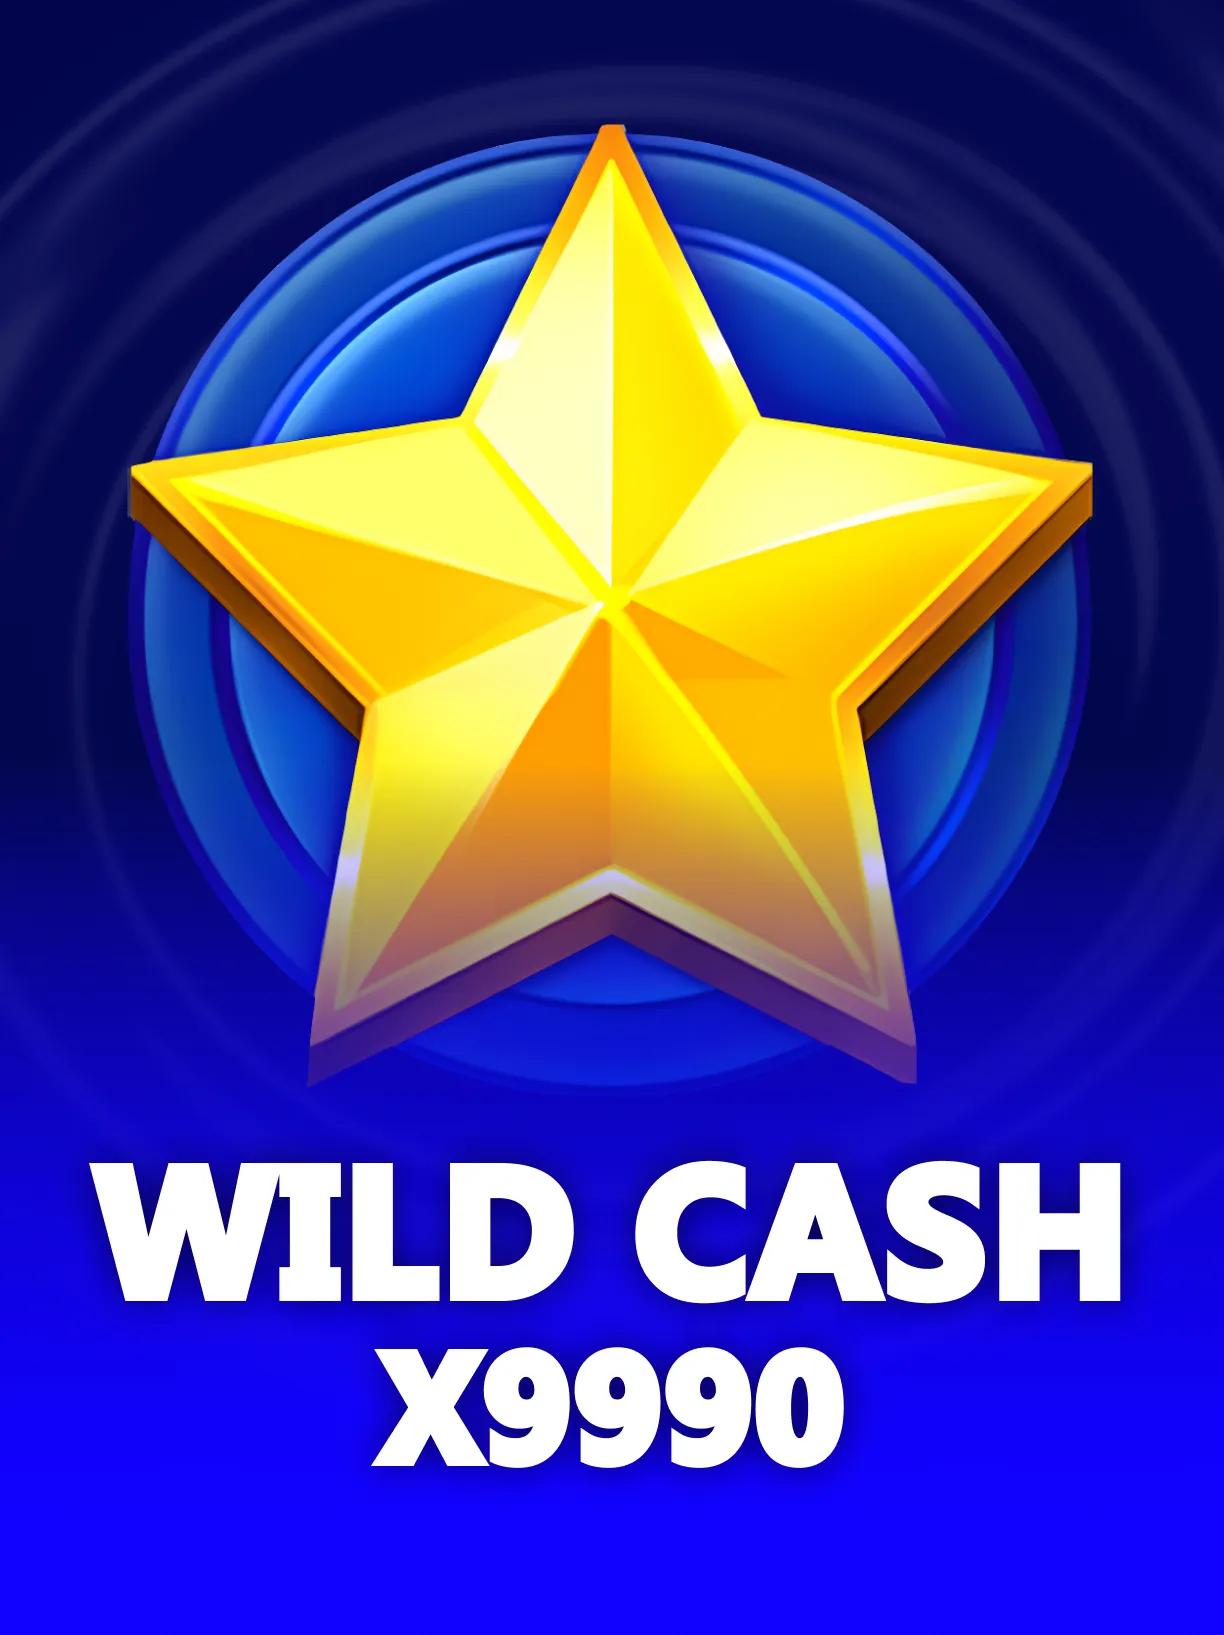 Wild_Cash_x9990_square.webp